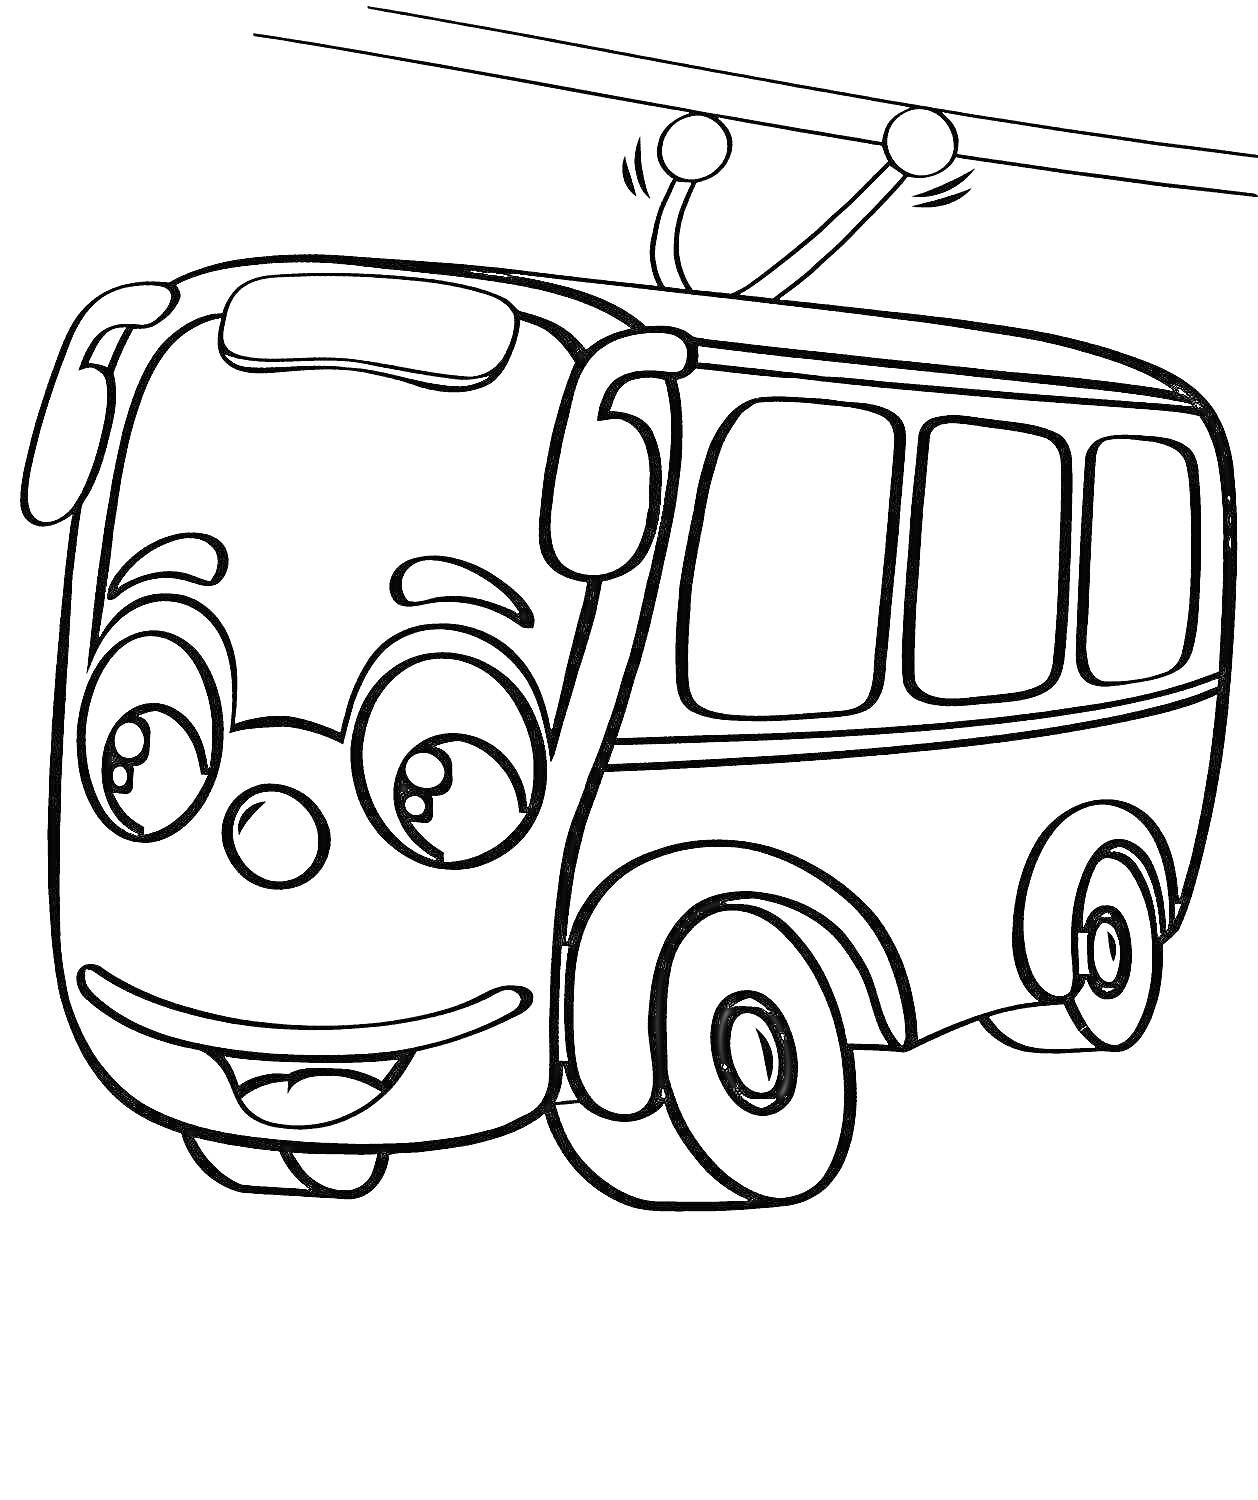 Раскраска Троллейбус с глазами и улыбкой, подключенный к проводам